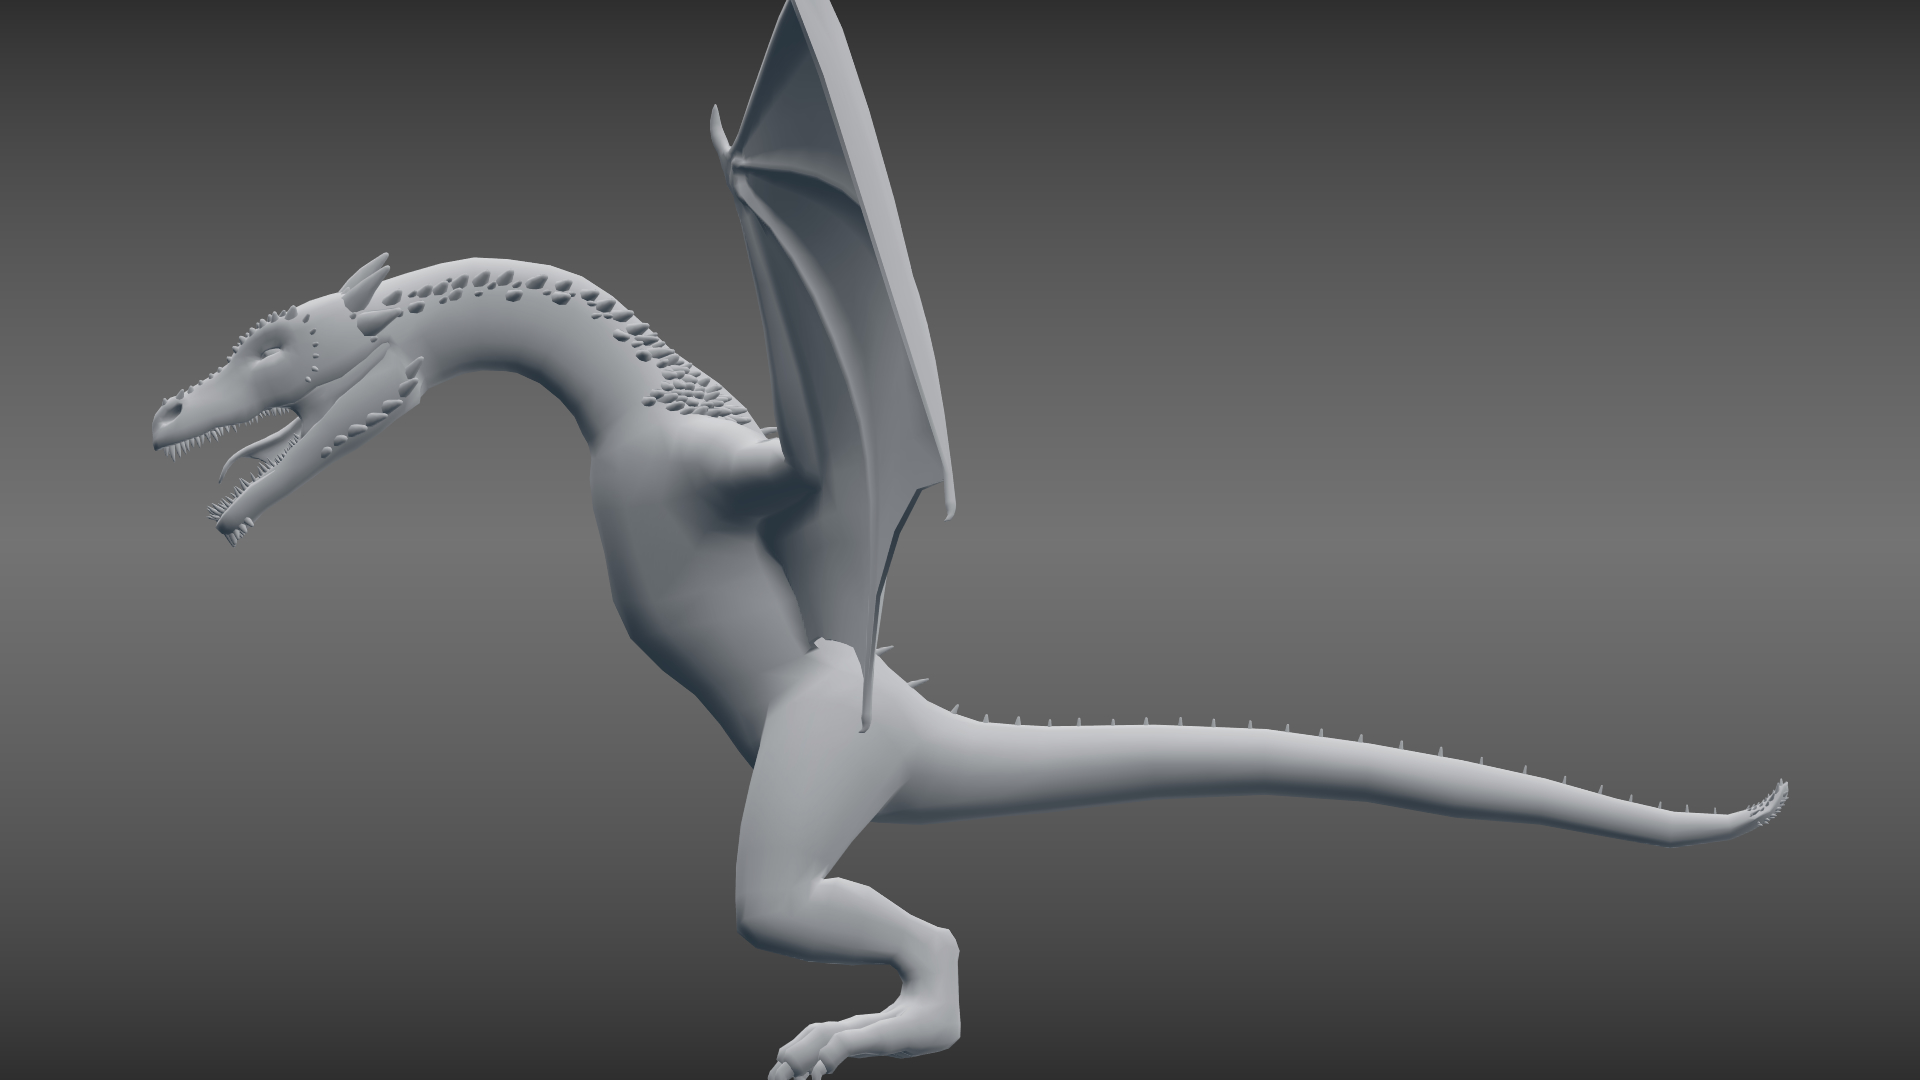 blender 3d dragon model download